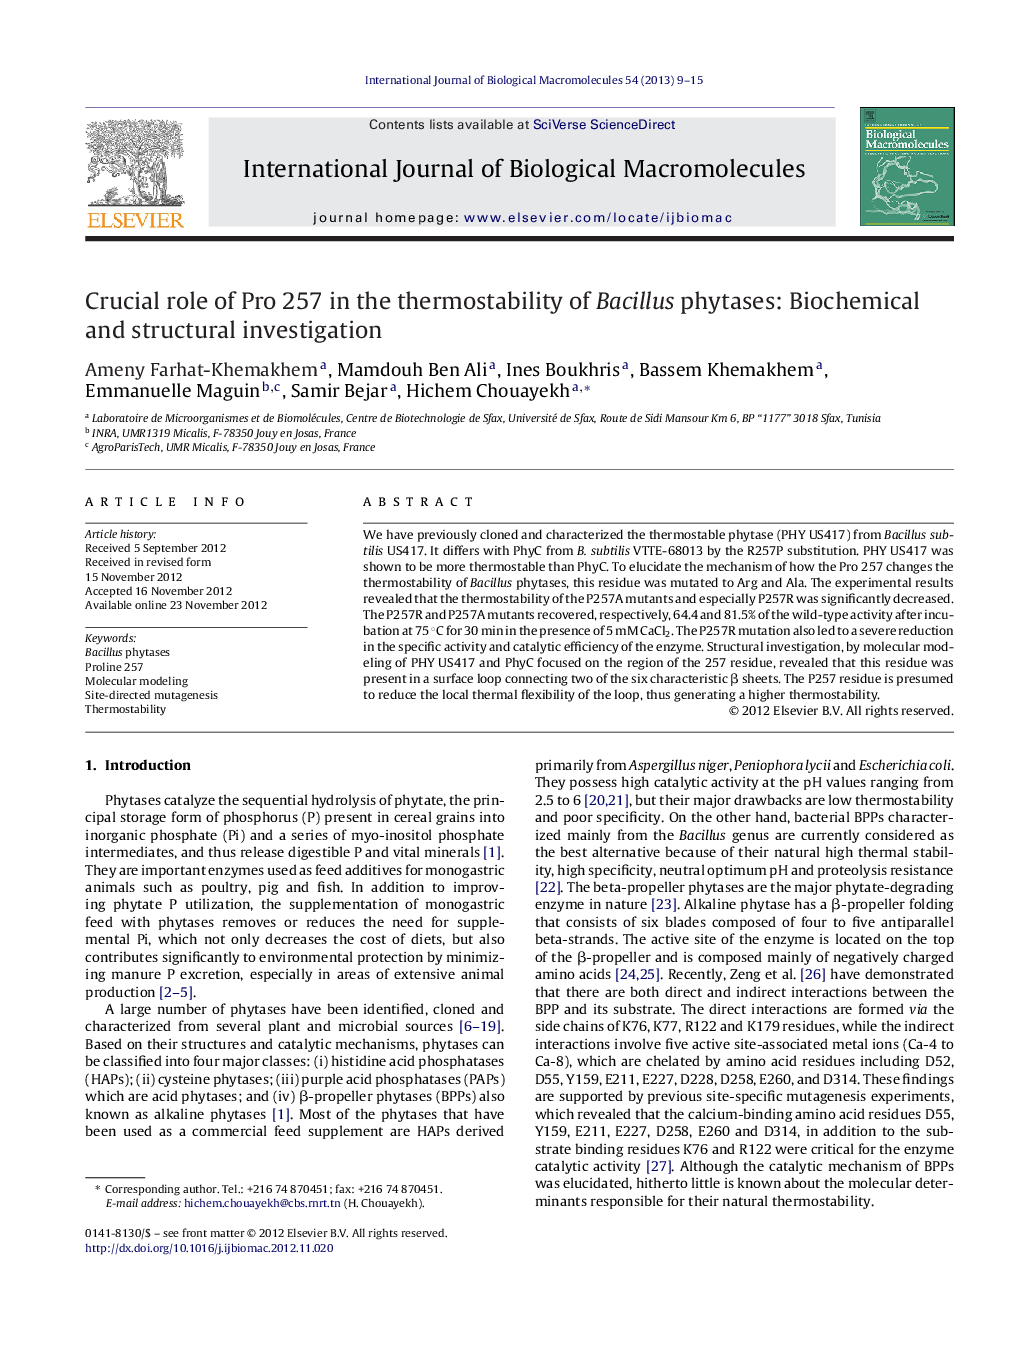 نقش حیاتی پرو 257 در ترموستگی بافتهای باسیل: مطالعات بیوشیمیایی و ساختاری 